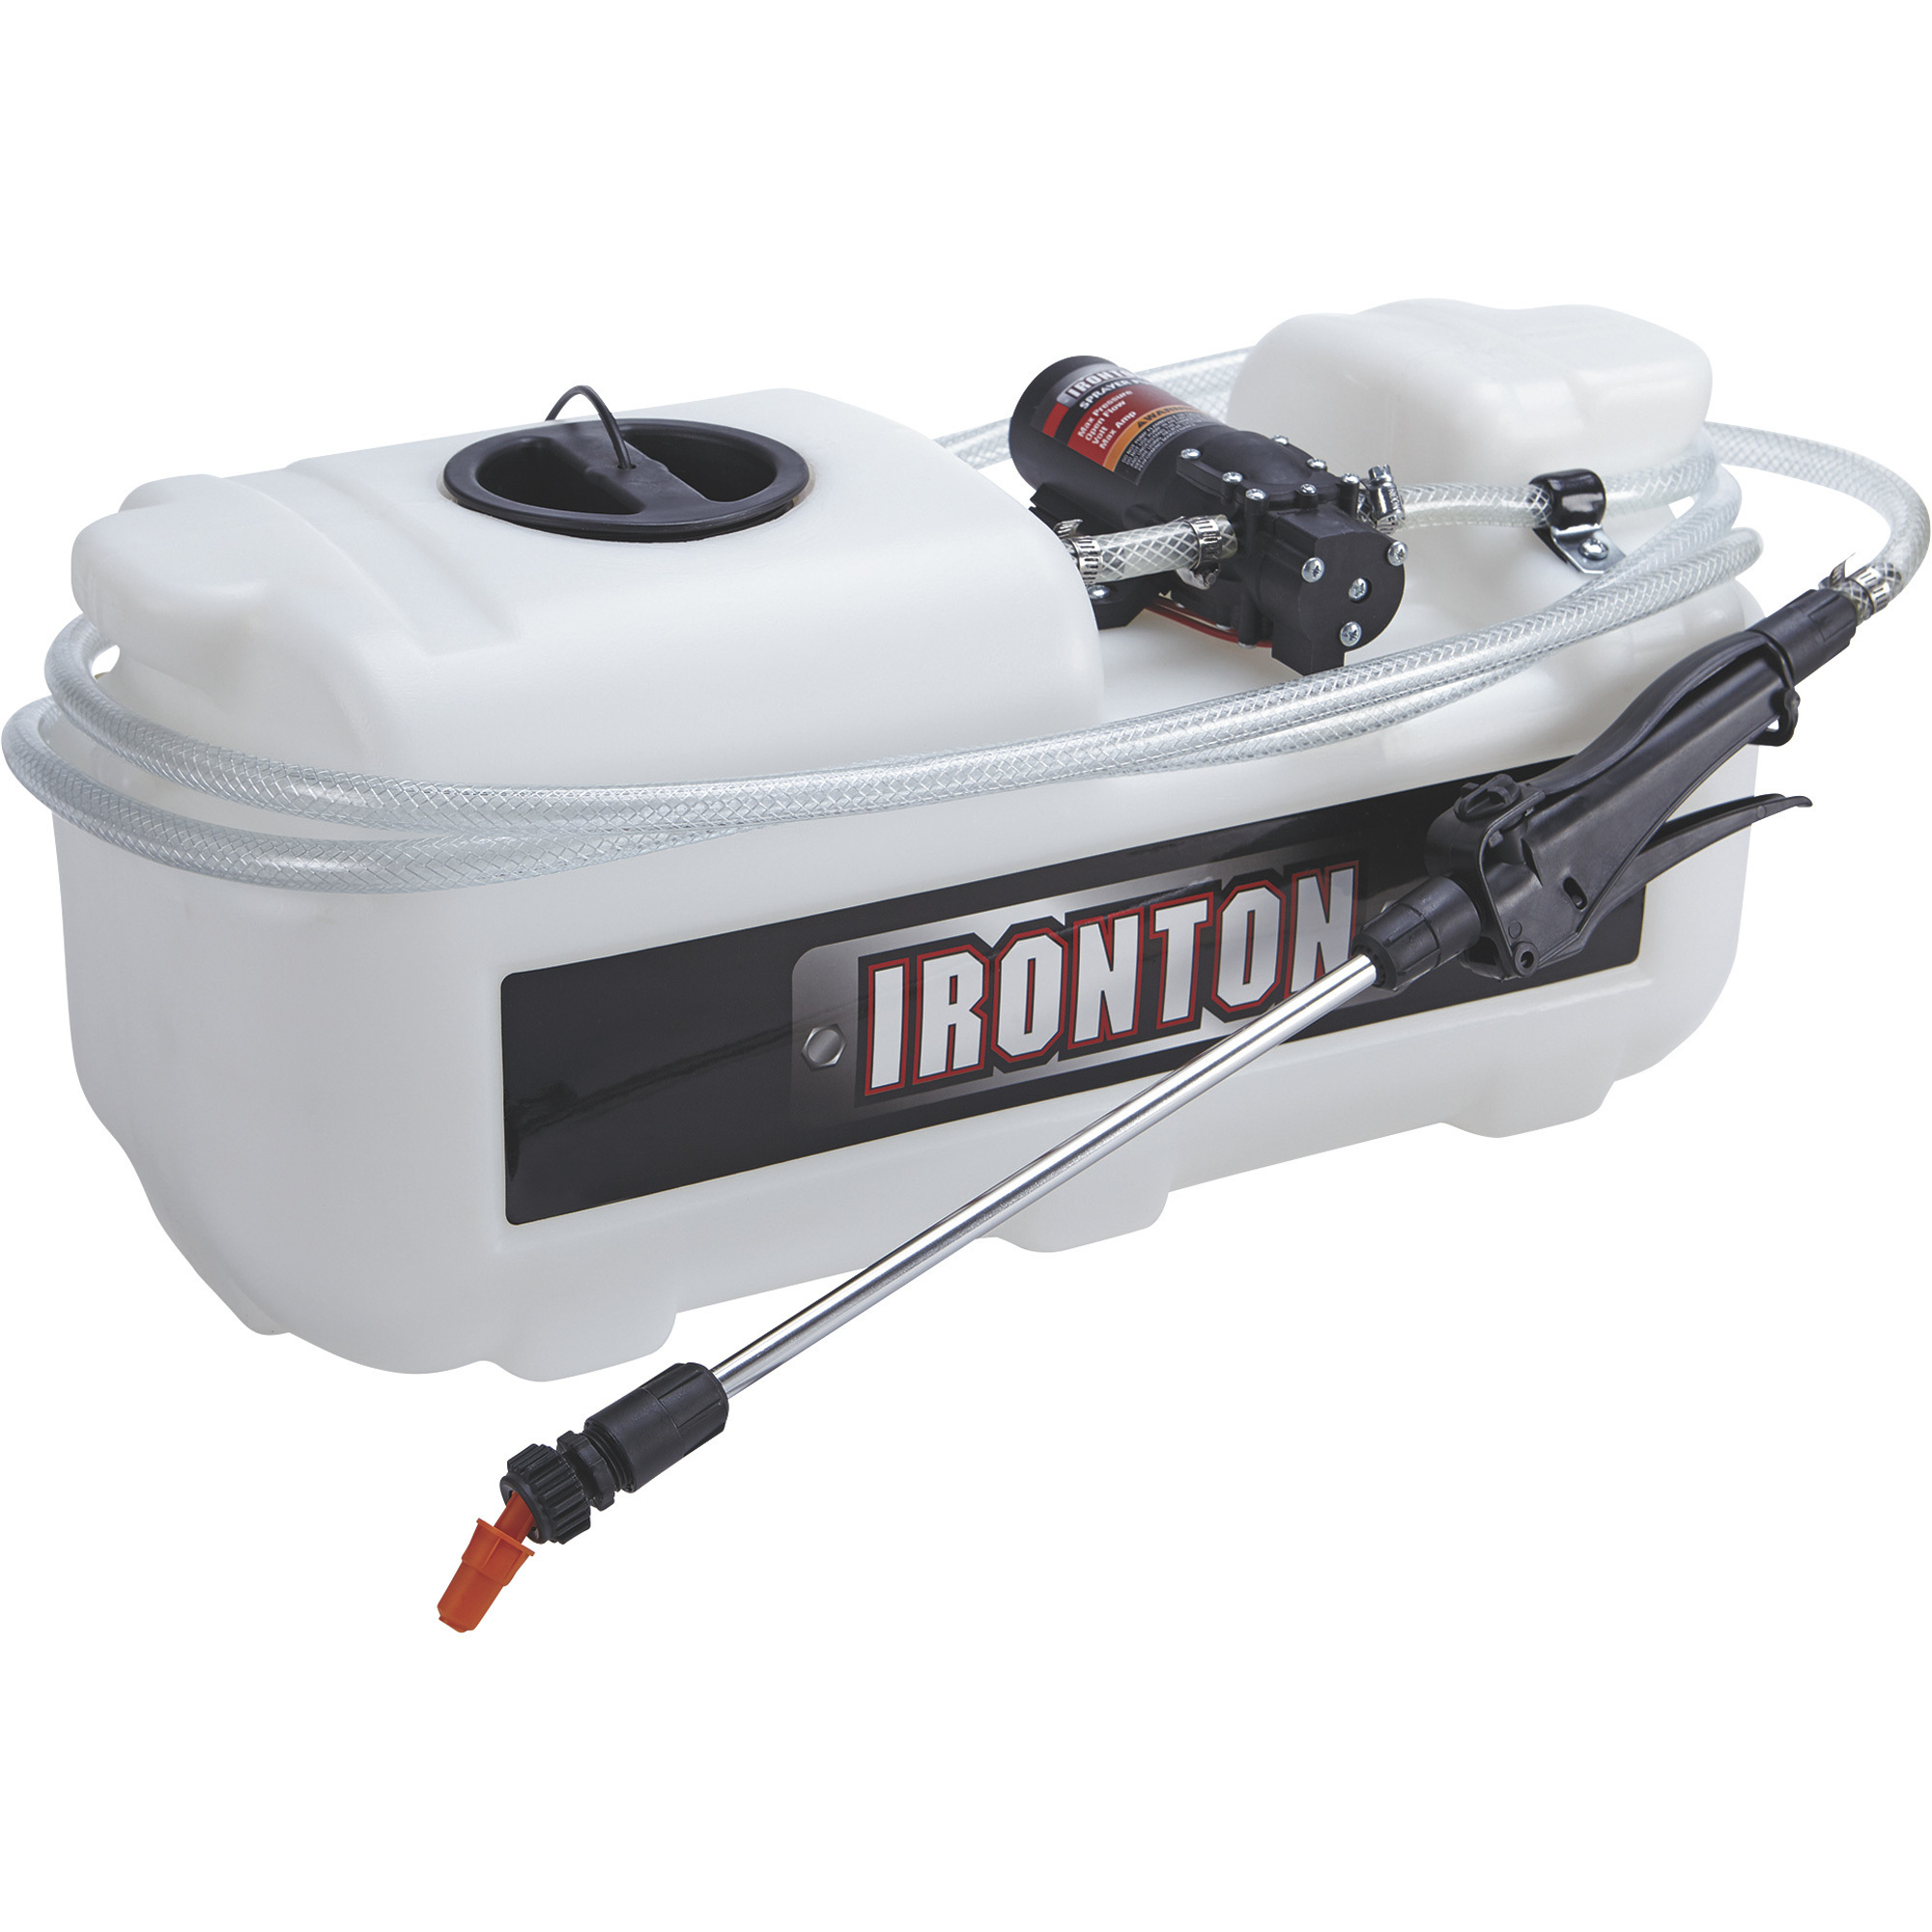 Ironton ATV Spot Sprayer â 5-Gallon Capacity, 1 GPM, 12 Volt